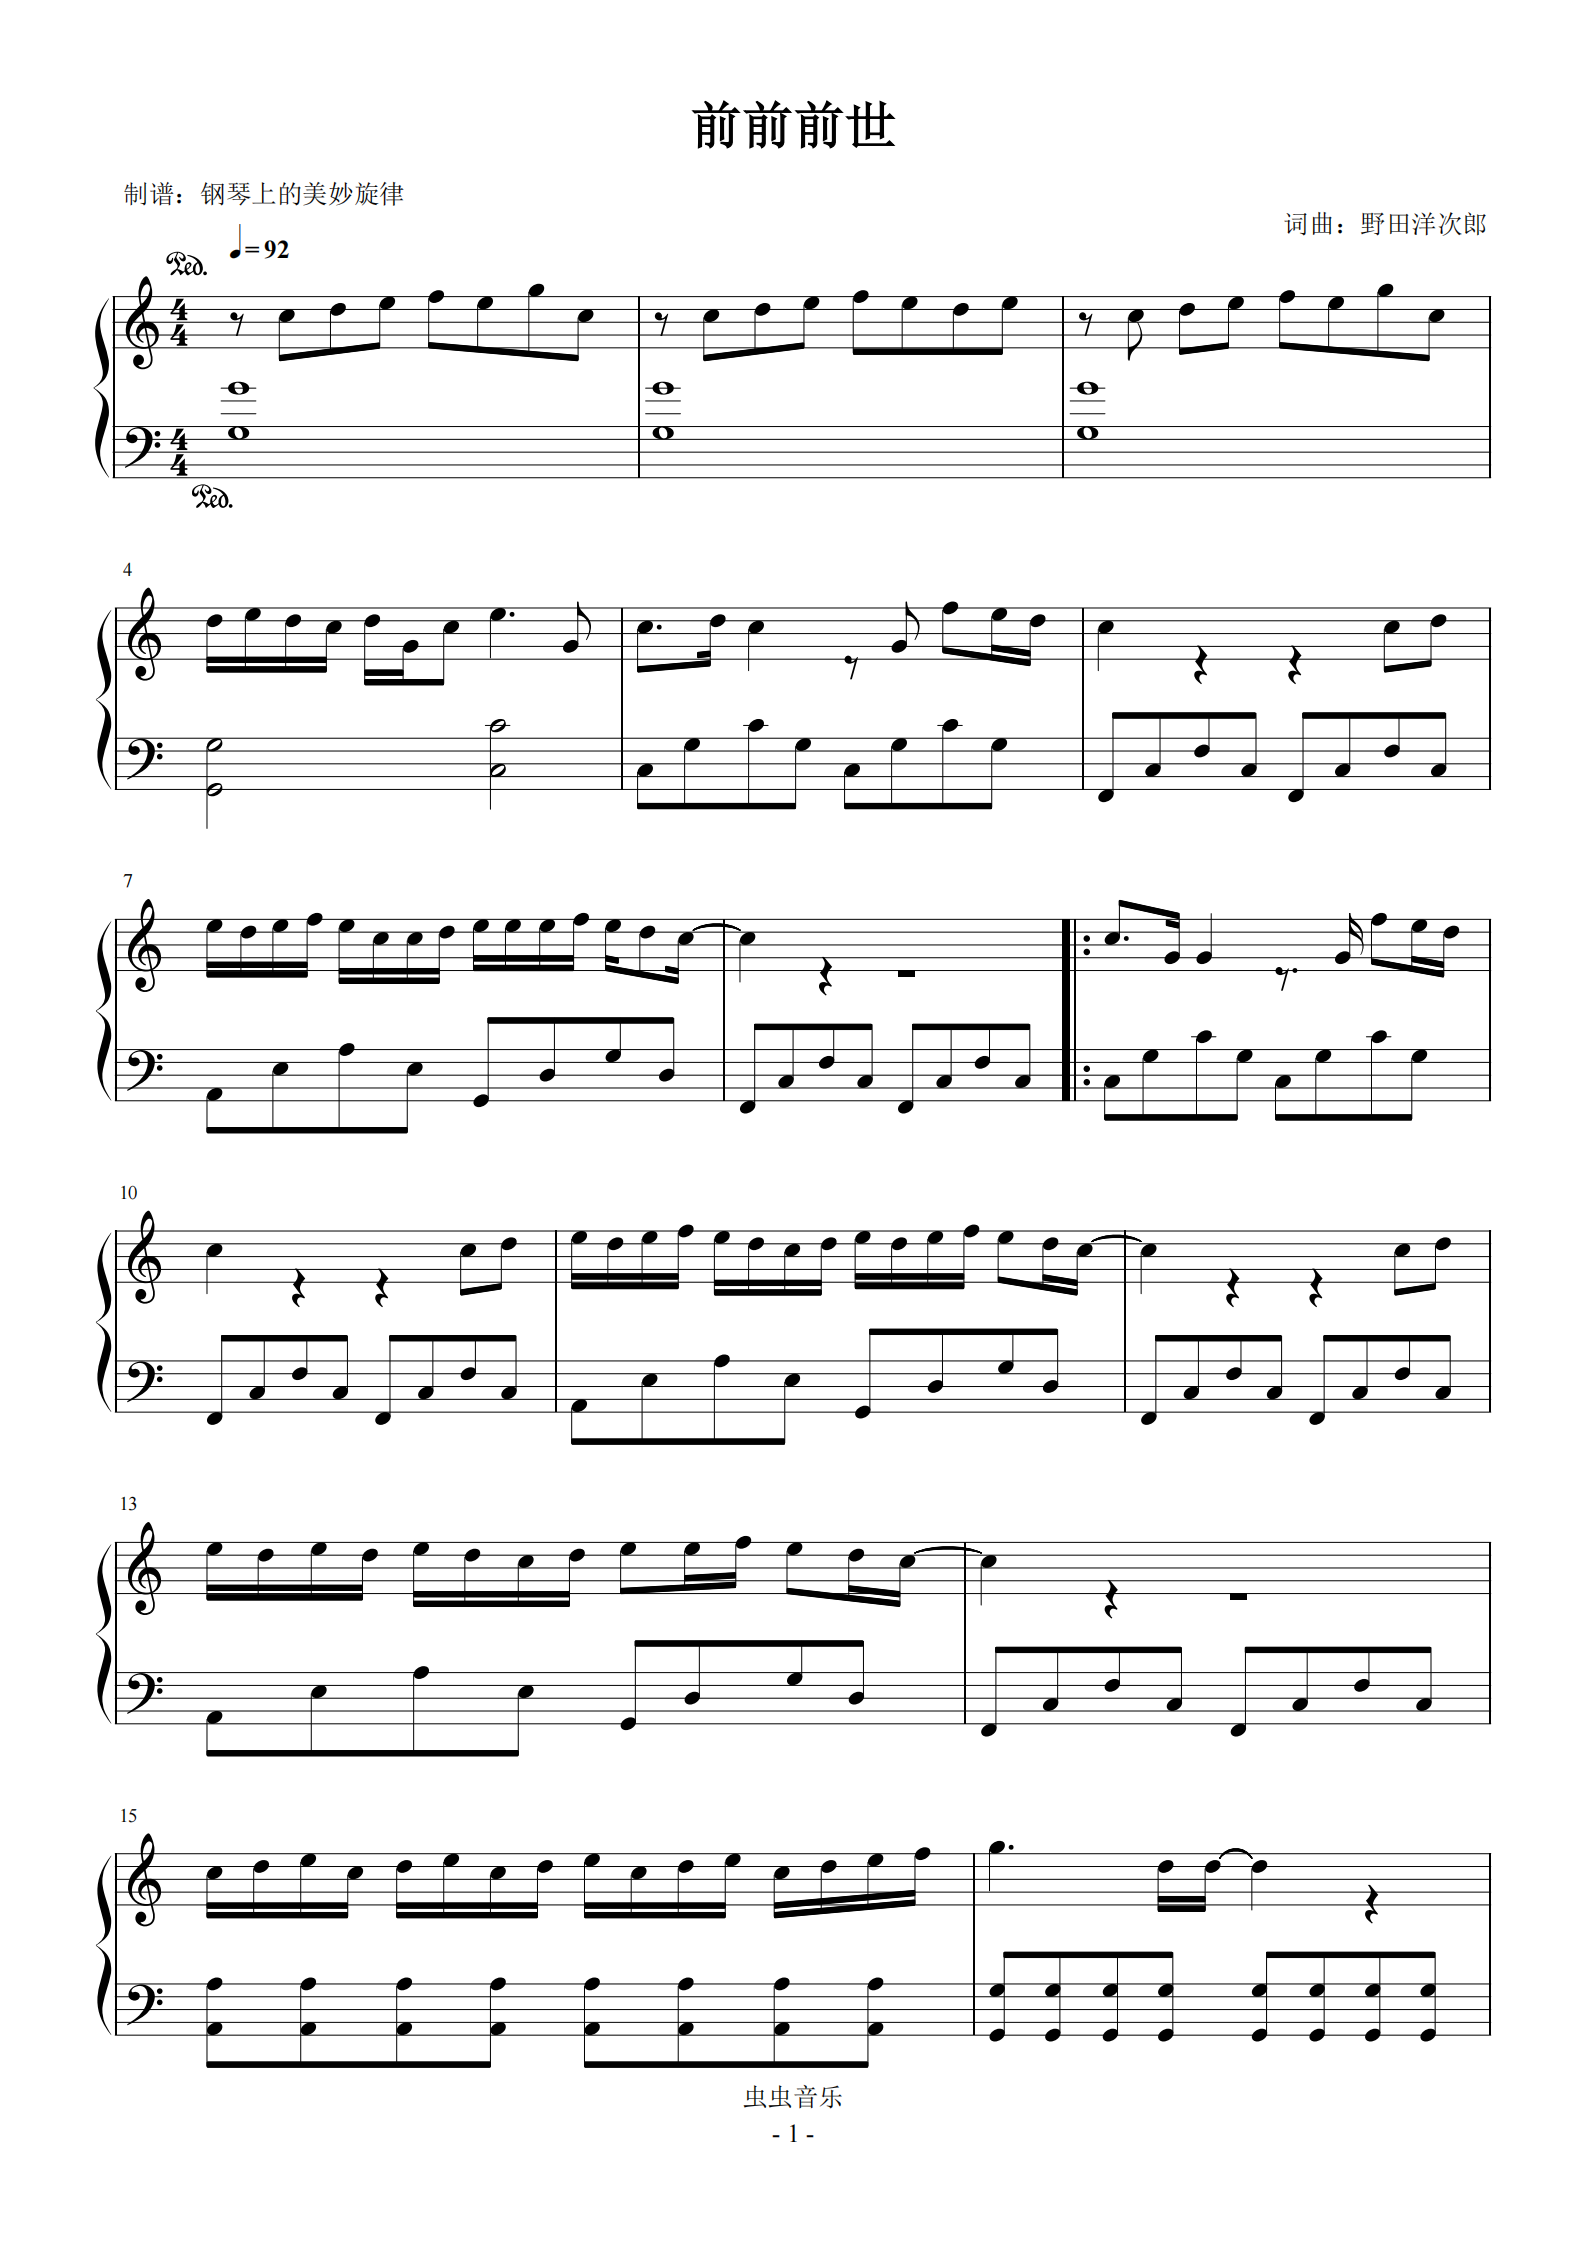 前前前世-电影《你的名字》的主题曲-钢琴谱文件（五线谱、双手简谱、数字谱、Midi、PDF）免费下载